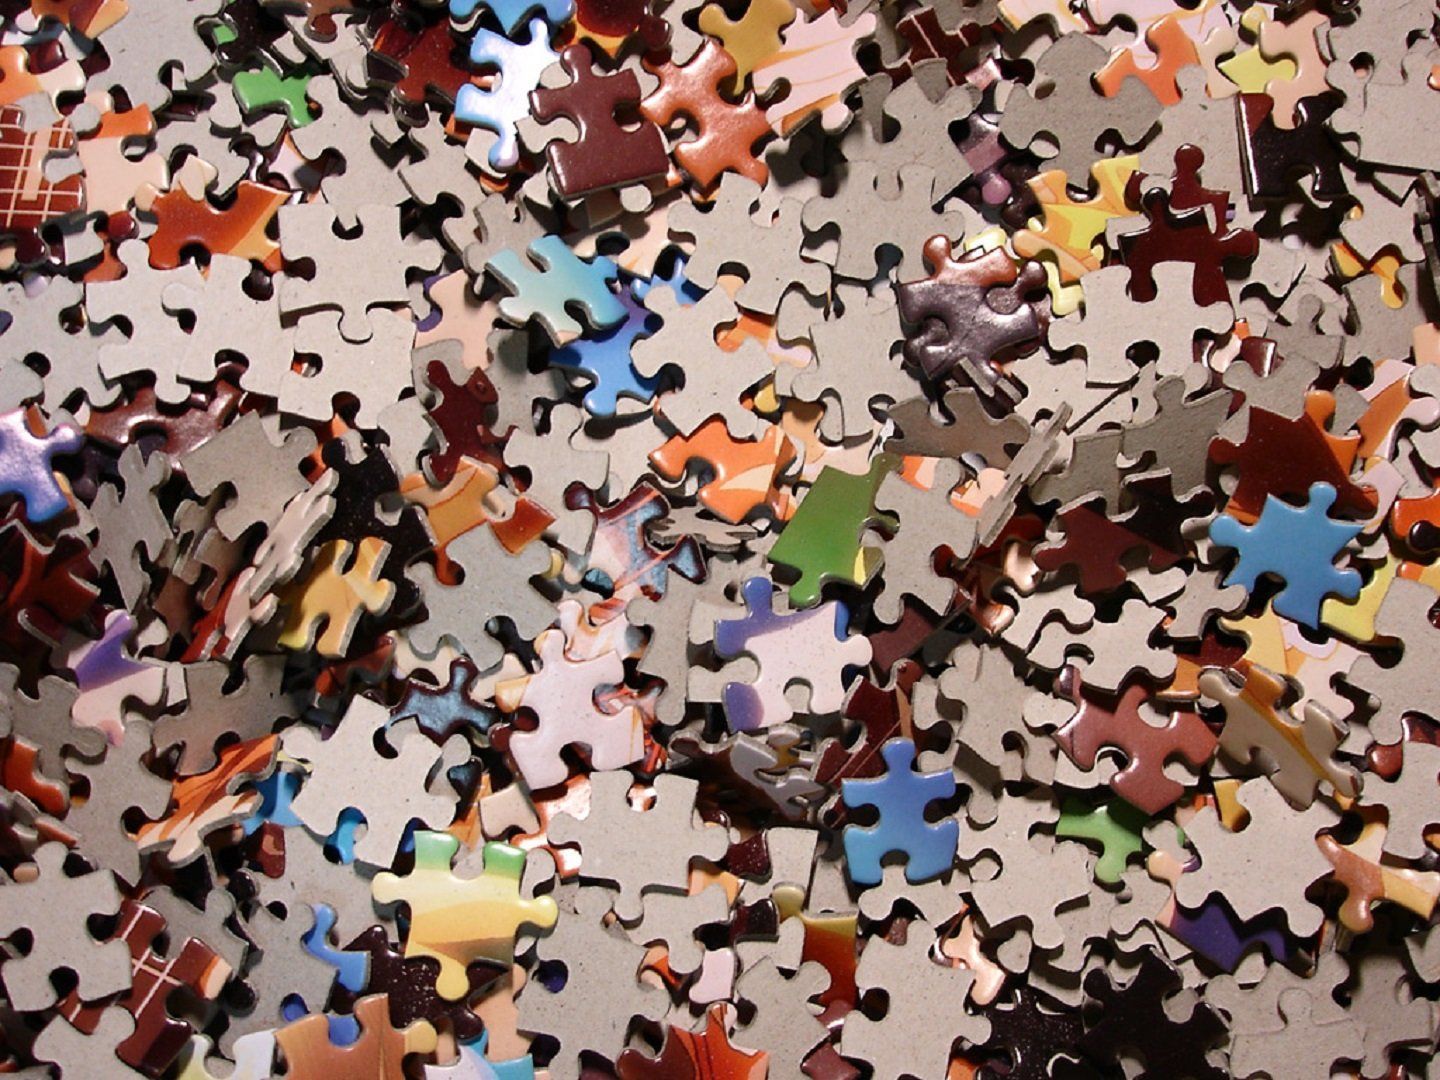 Jigsaw Puzzle wallpaper | 1440x1080 | 412876 | WallpaperUP